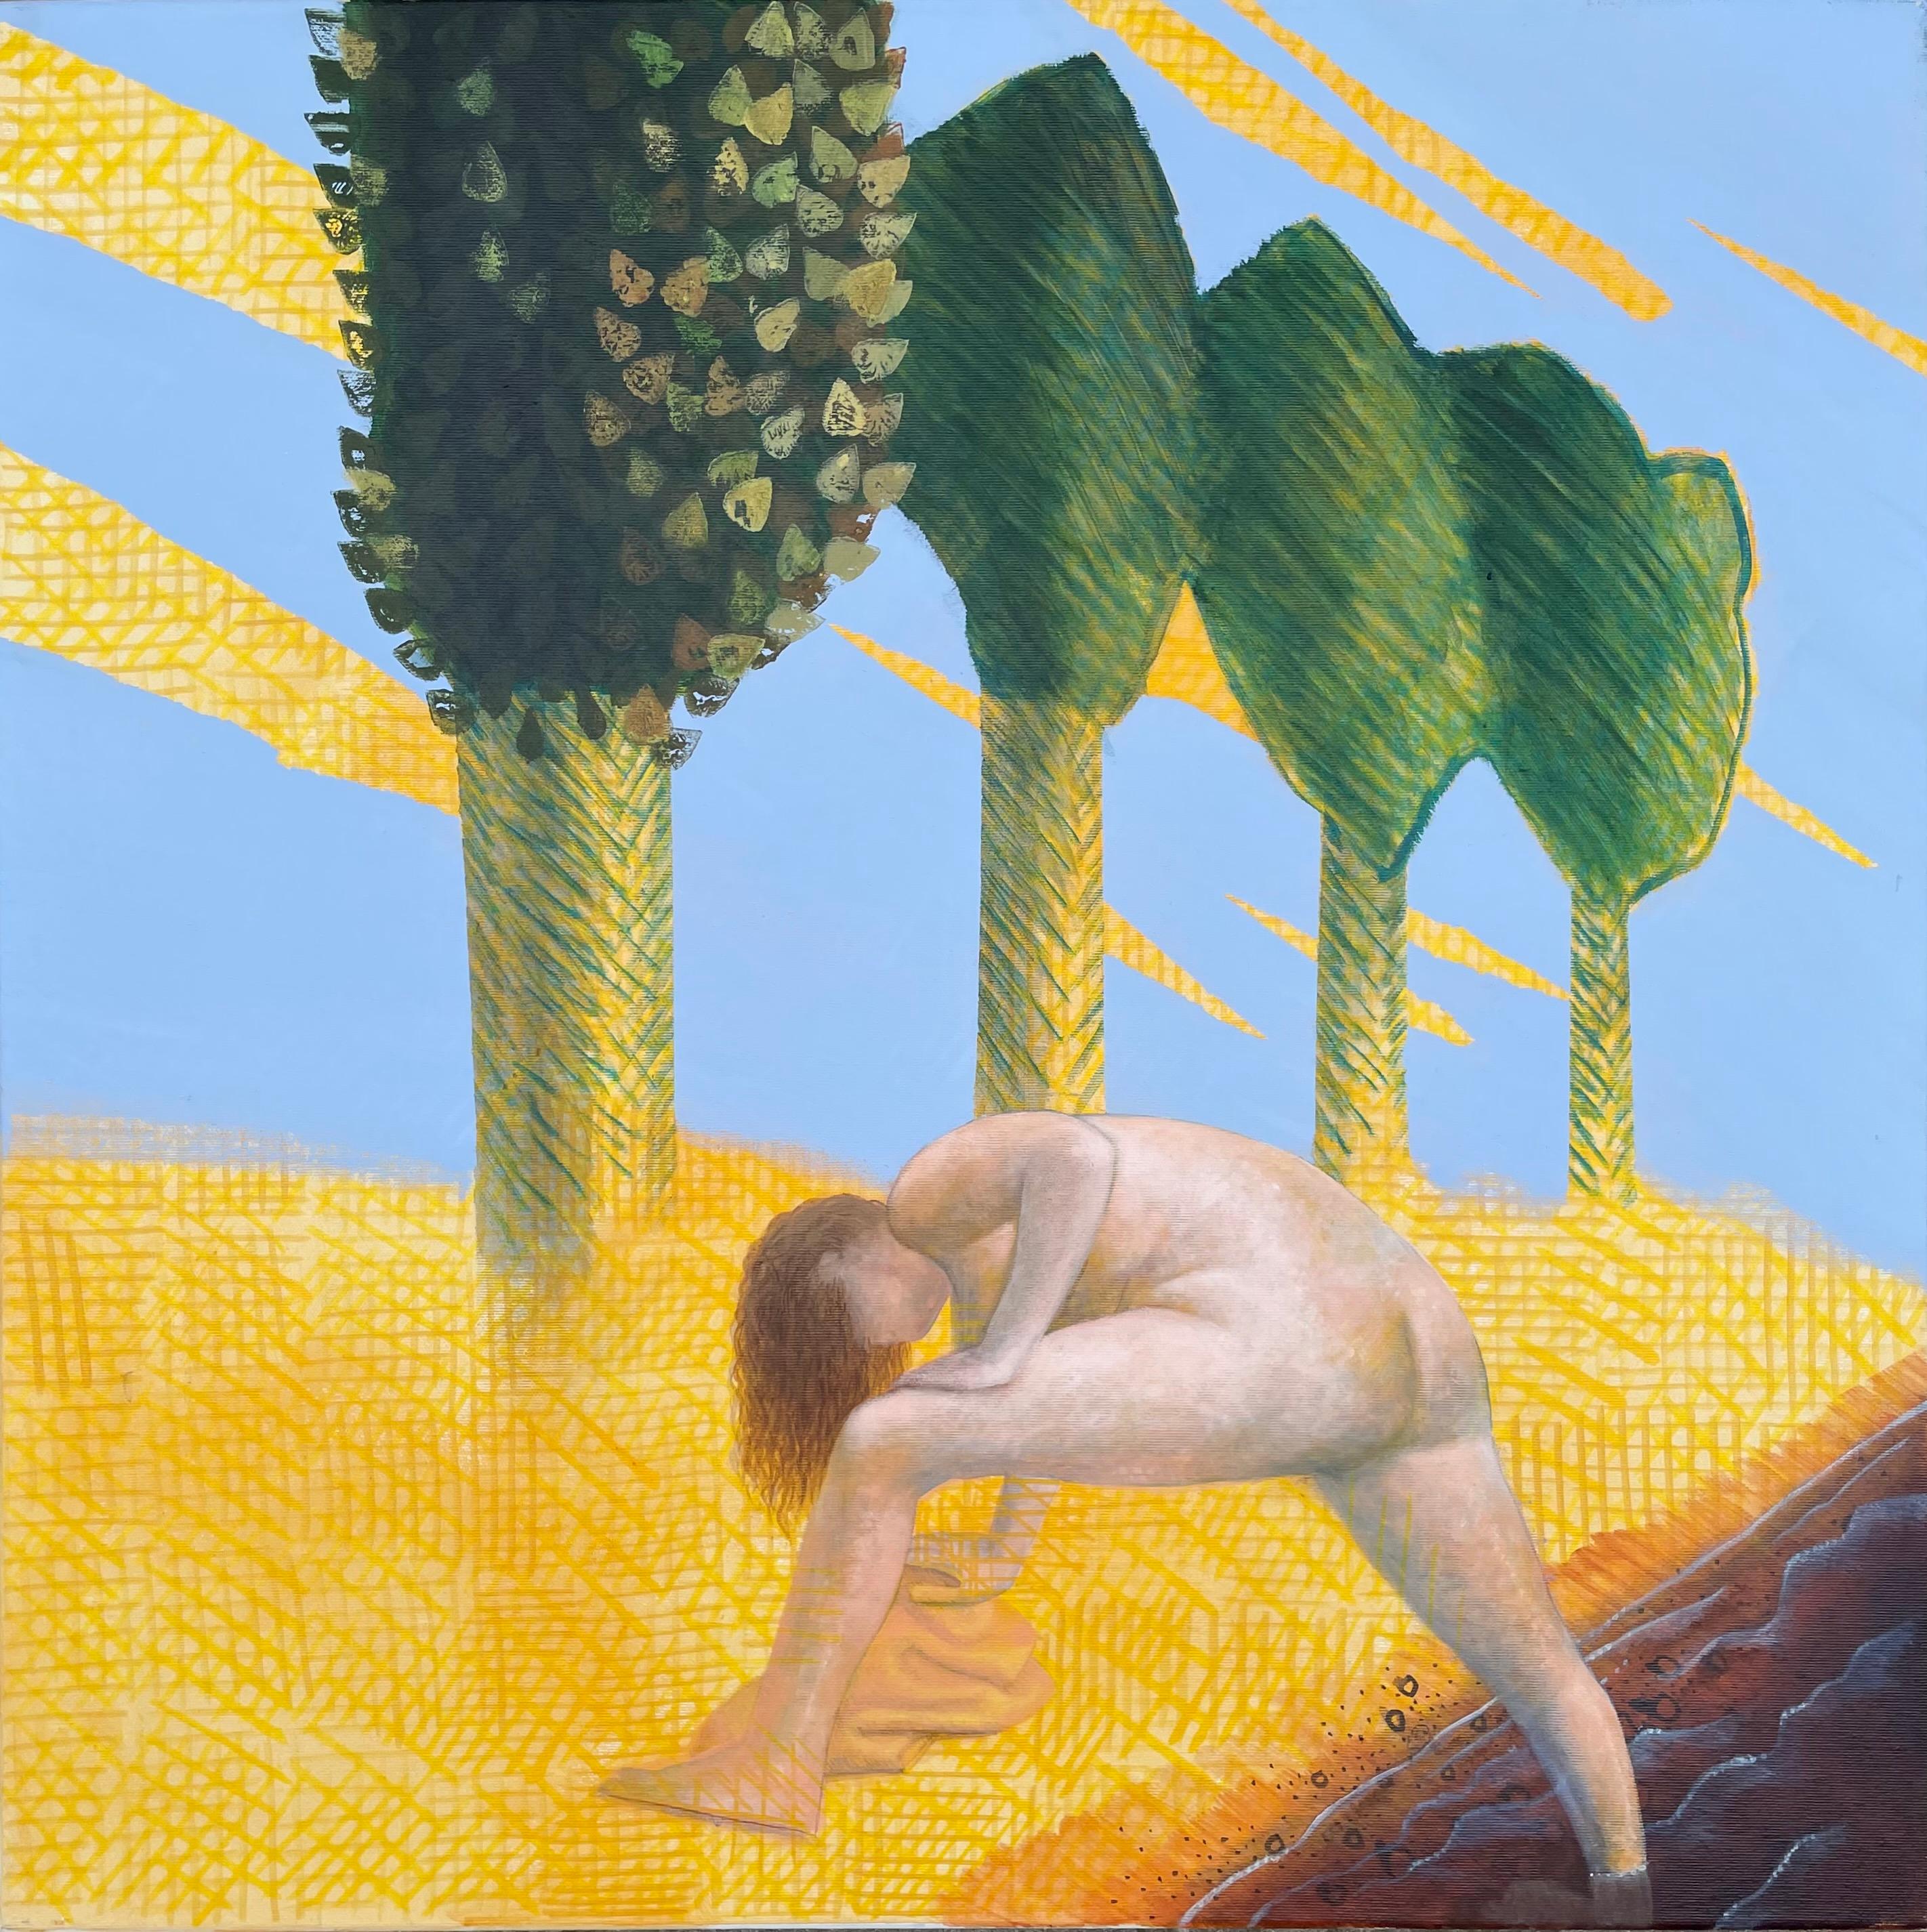 Alexandru Rădvan Nude Painting – Süd - Zeitgenössisch, Gelb, Blau, Grün, Nude, Wasser, Sommer, Bäume